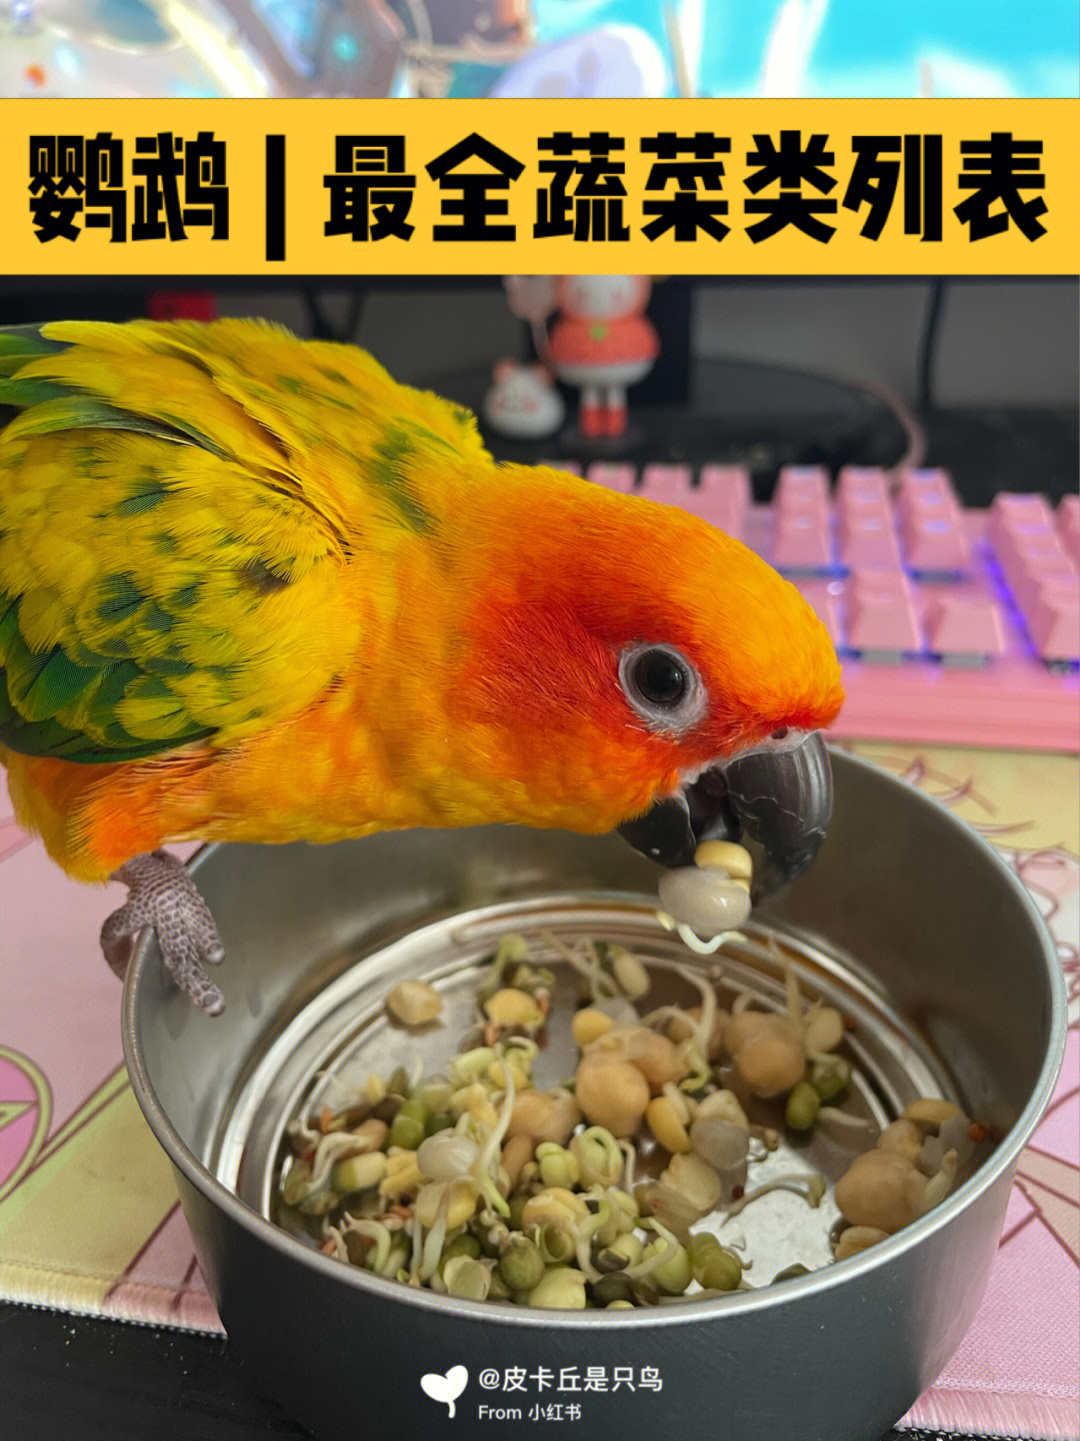 鹦鹉最全蔬菜食物列表02文字版